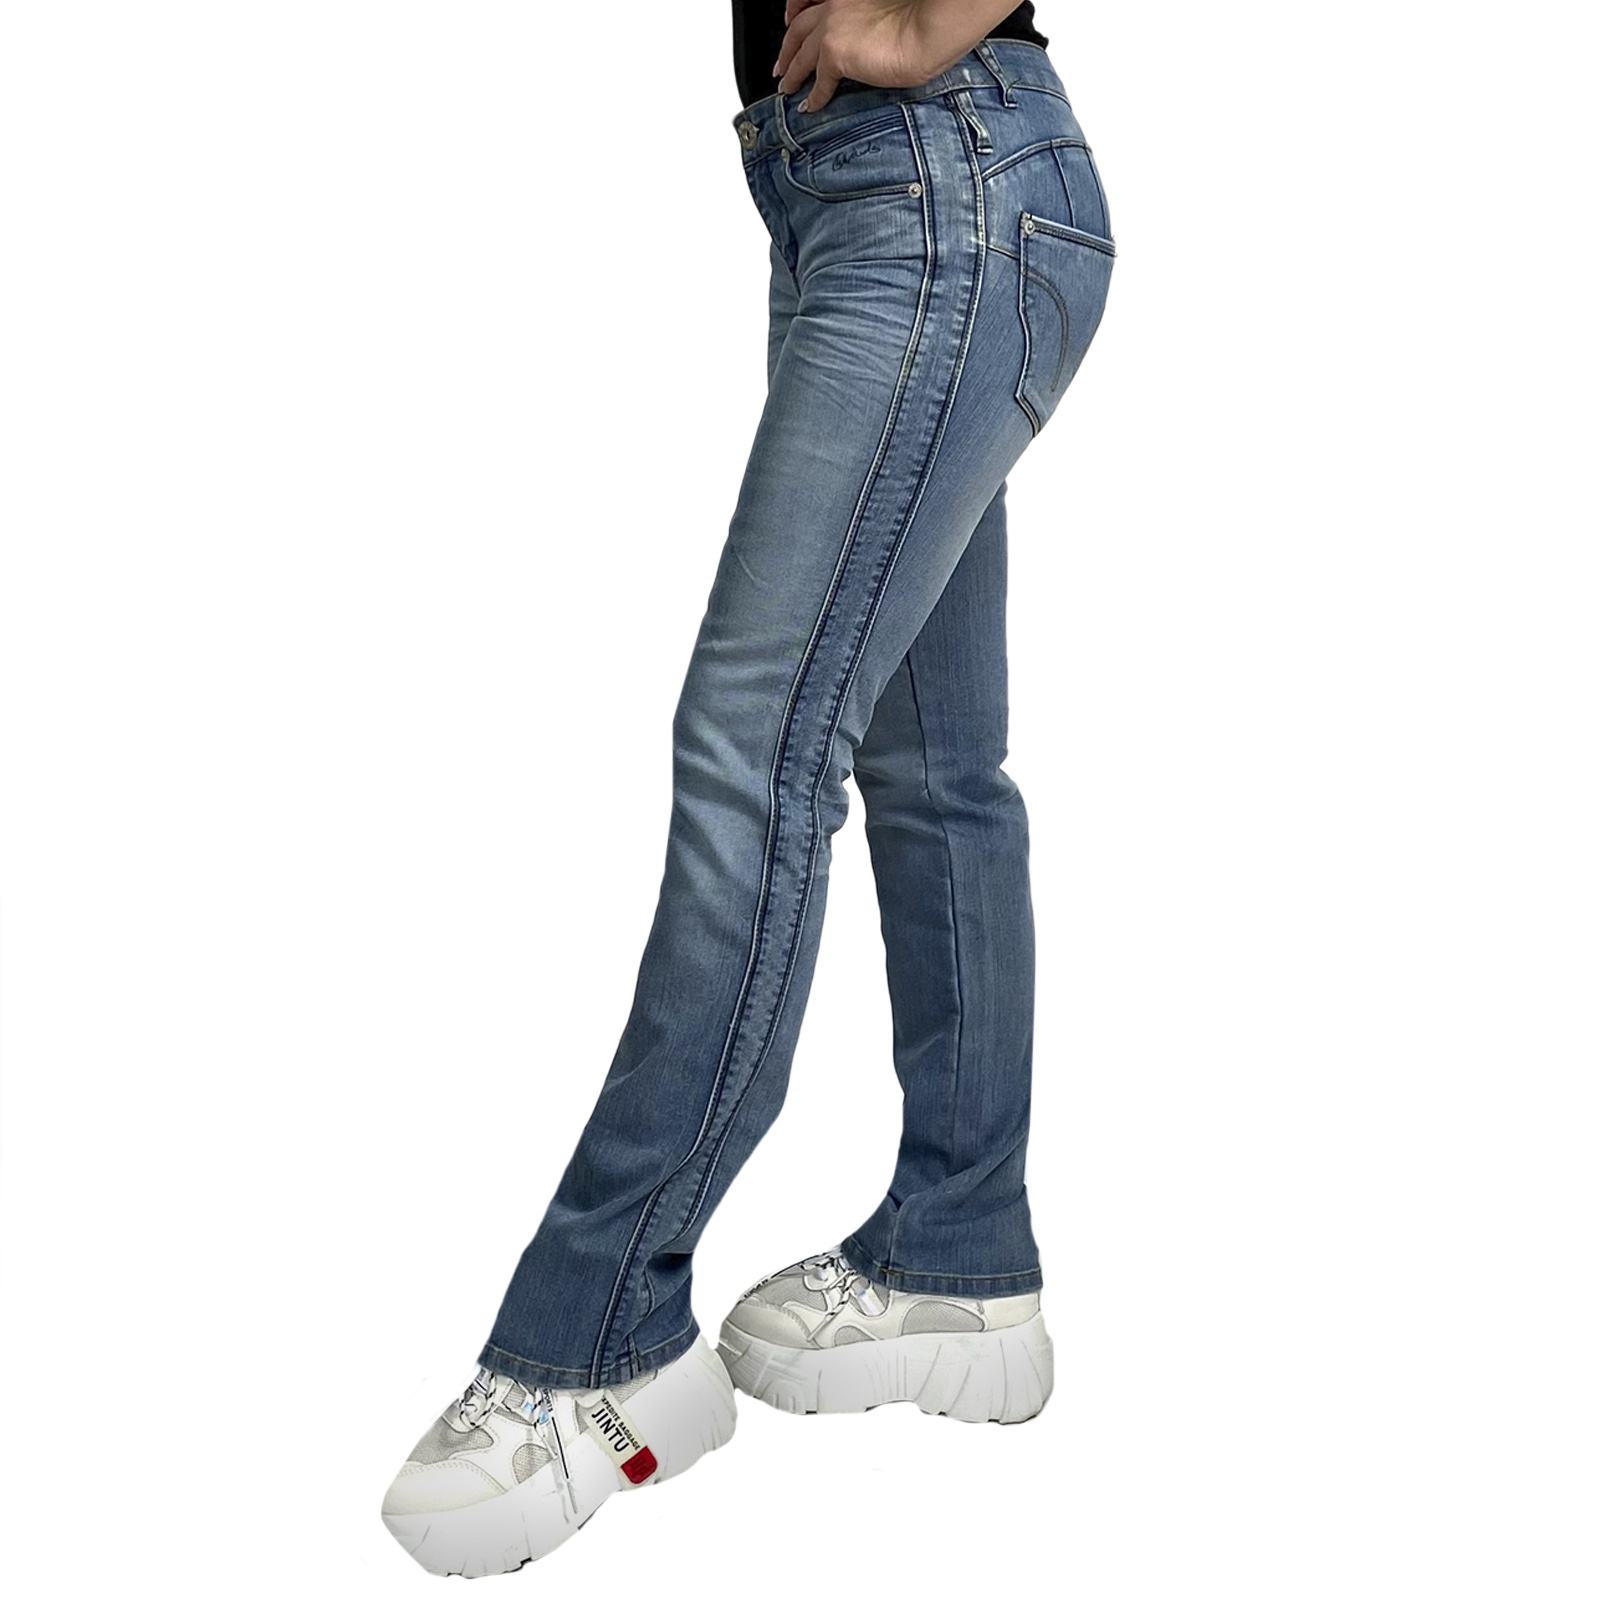 Недорогие джинсы для девушек – наличие